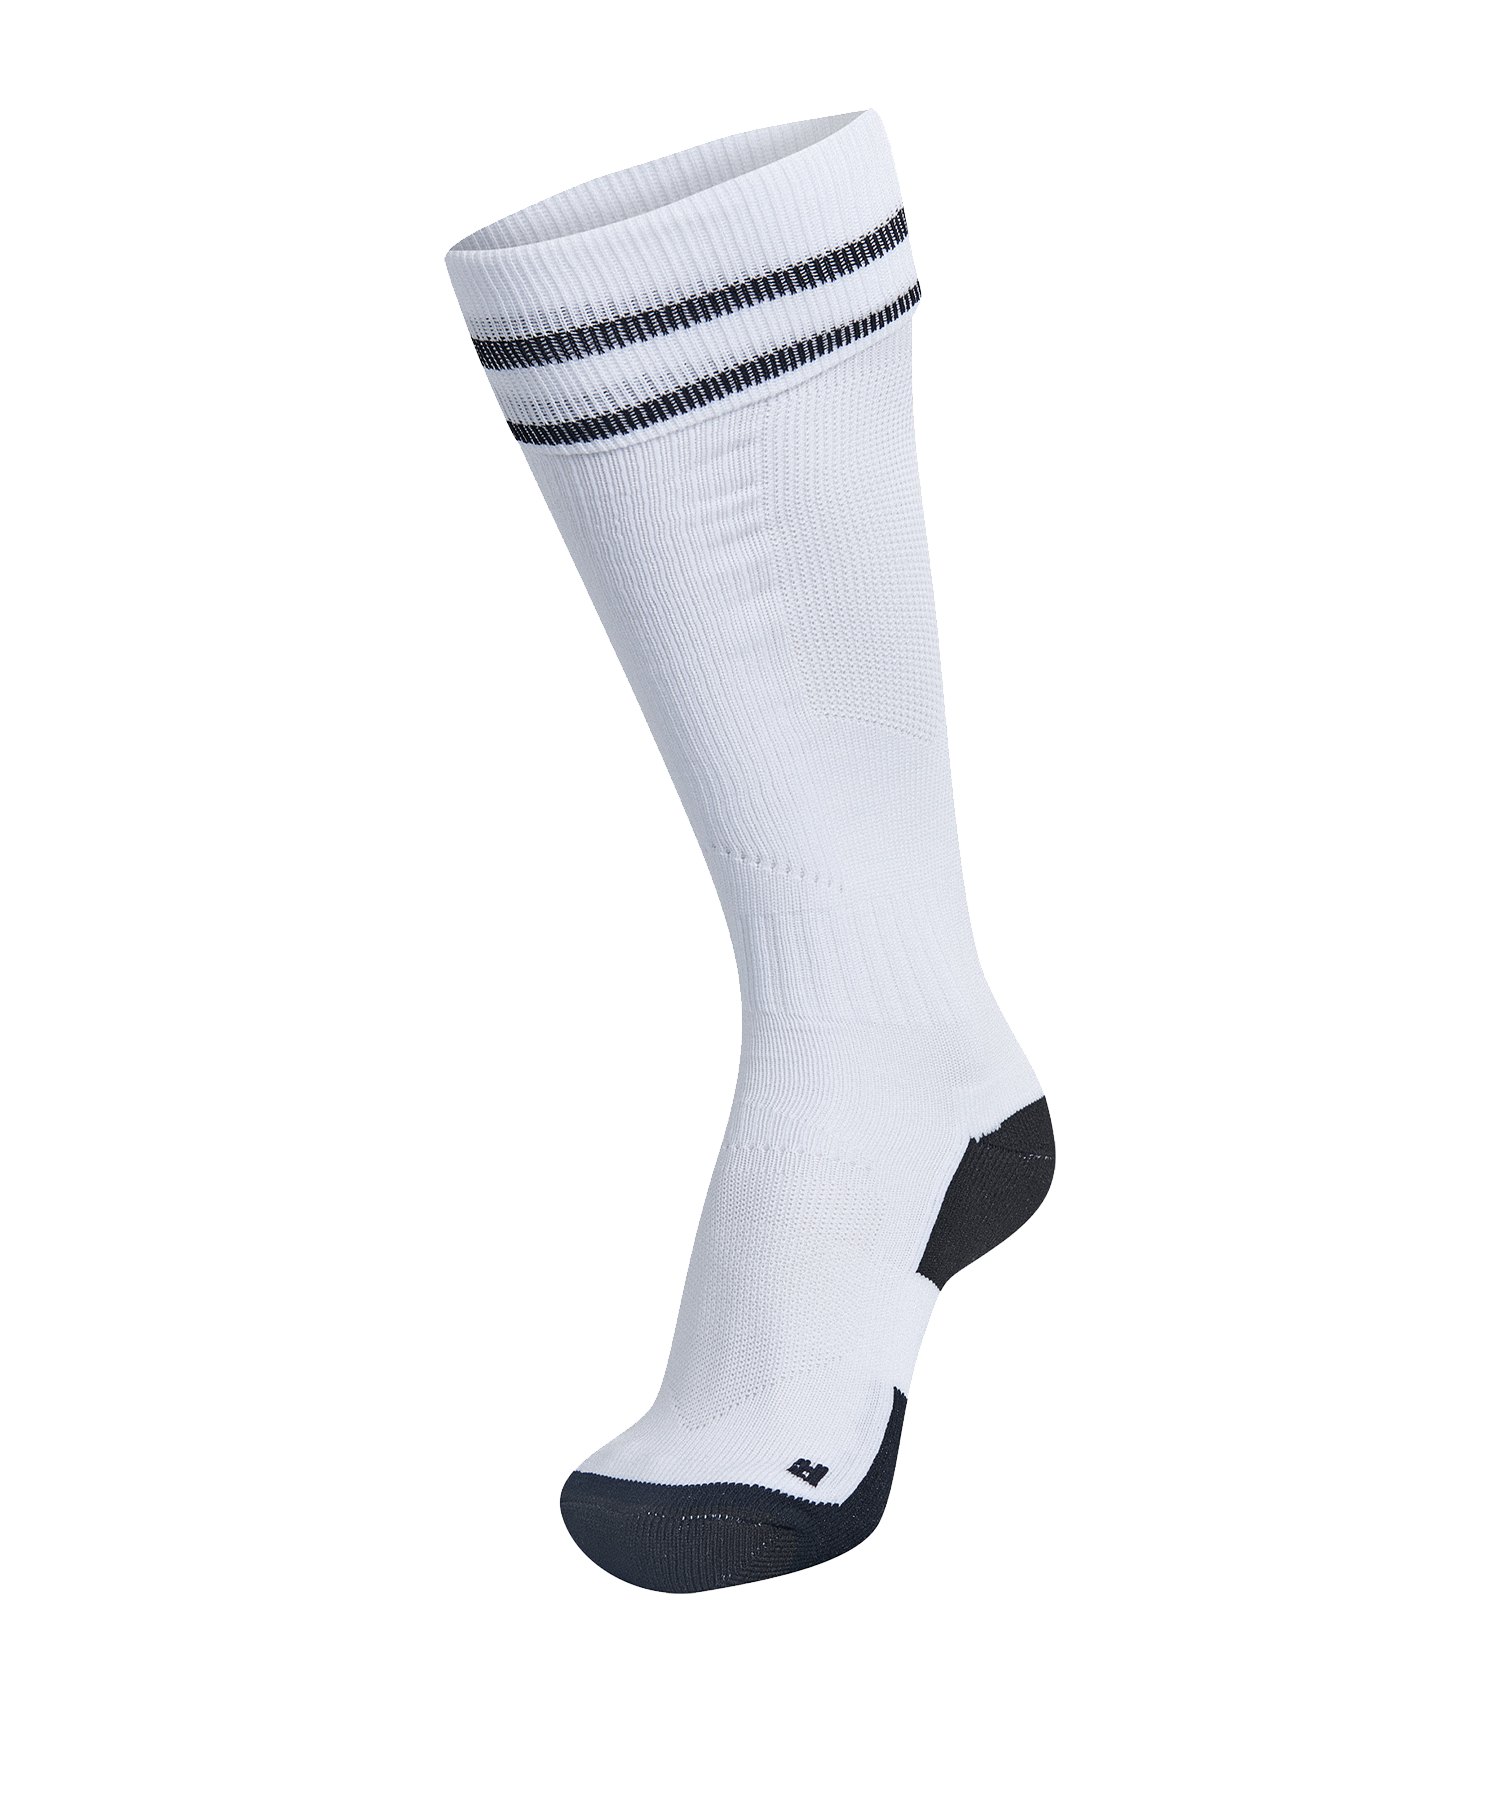 Hummel Football Sock Socken Weiss F9124 - Weiss